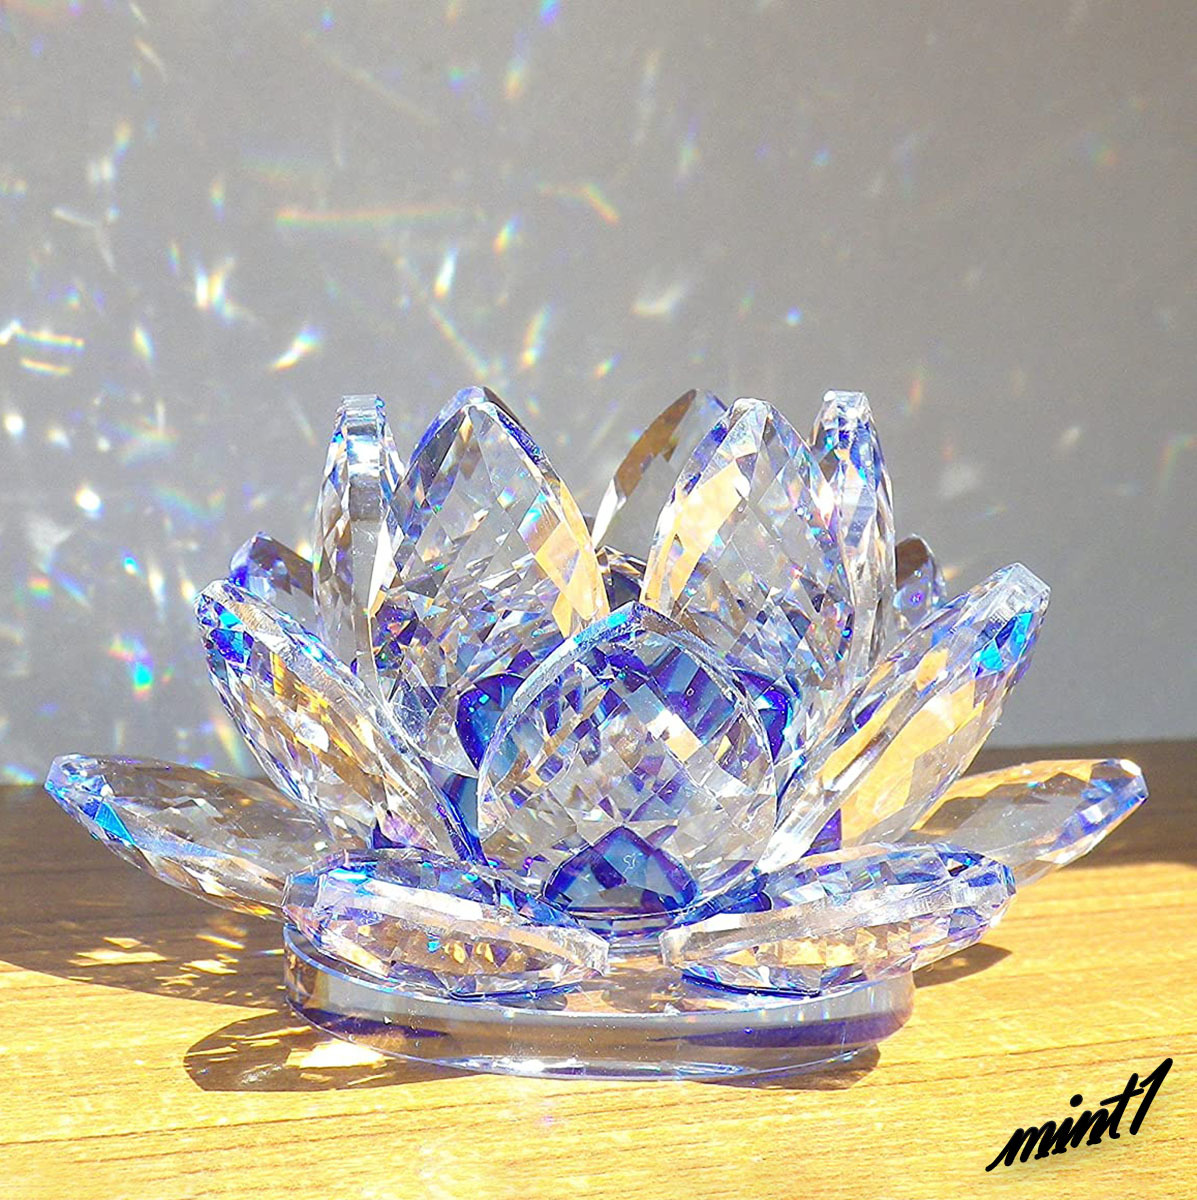 [Purifica la mala suerte] Objeto azul loto Feng Shui trabajo suerte estudio suerte atrapasol adorno interior cristal color azul, Artículos hechos a mano, interior, bienes varios, ornamento, objeto